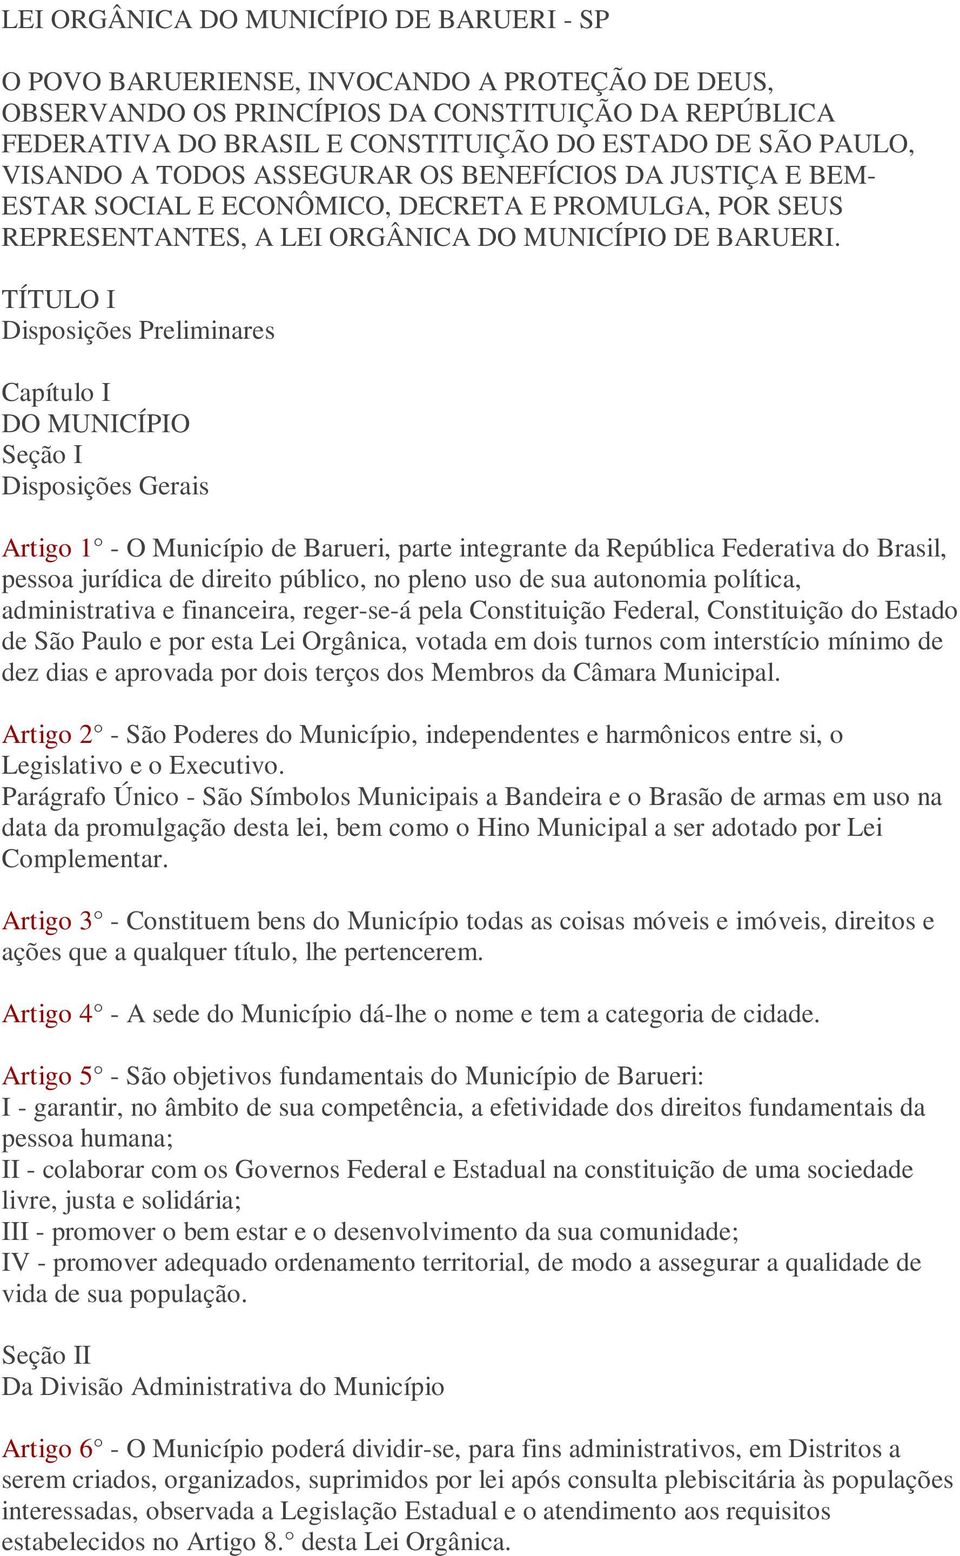 TÍTULO I Disposições Preliminares Capítulo I DO MUNICÍPIO Seção I Disposições Gerais Artigo 1 - O Município de Barueri, parte integrante da República Federativa do Brasil, pessoa jurídica de direito